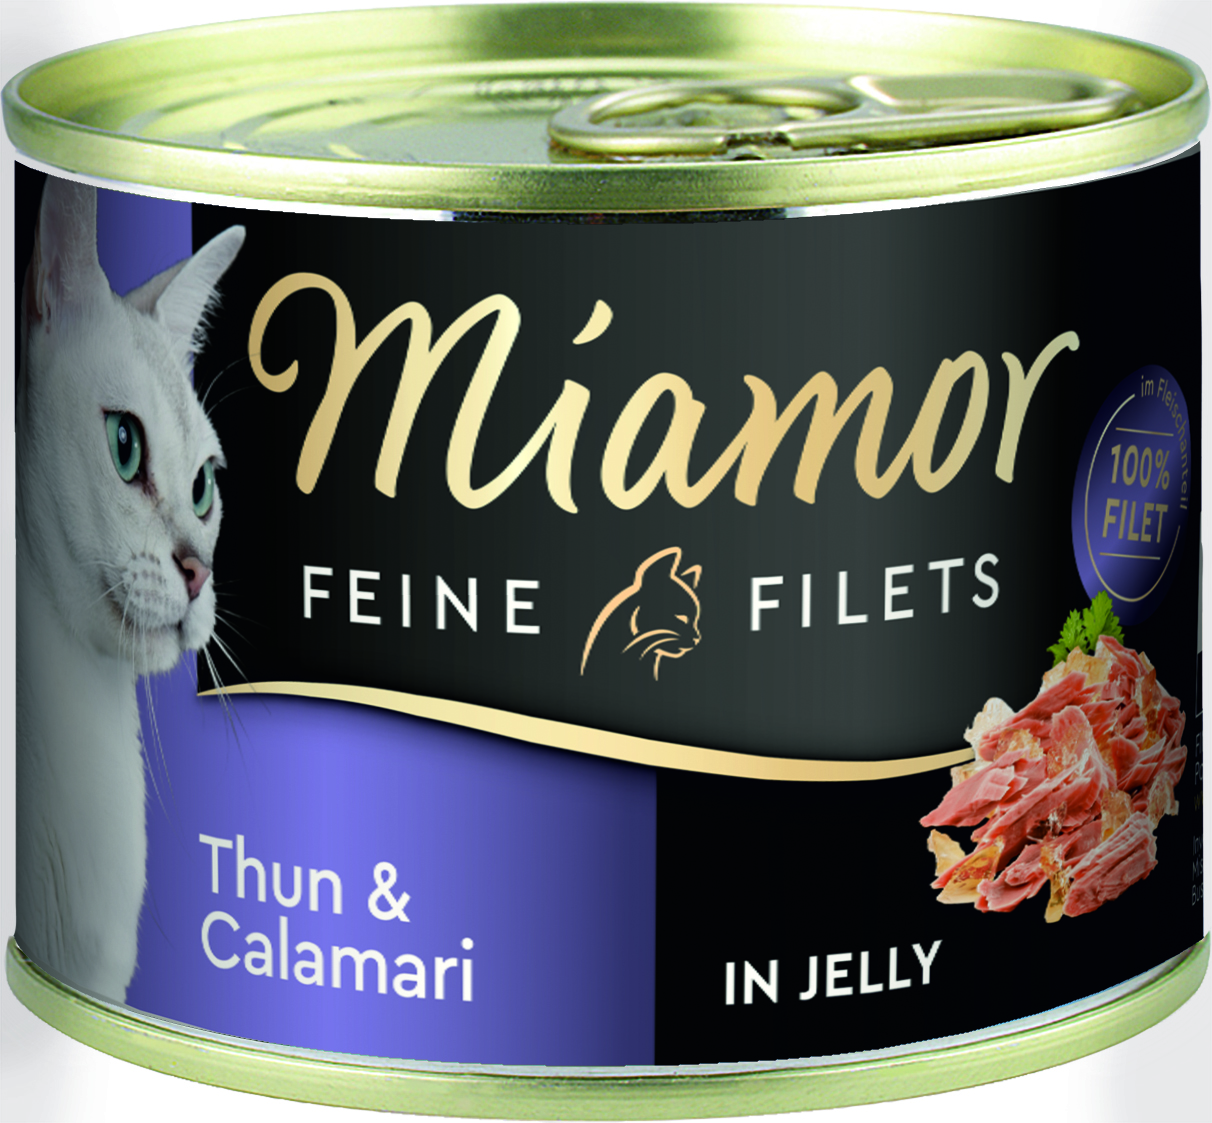 Miamor Feine Filets Thunfisch & Calamari 185g